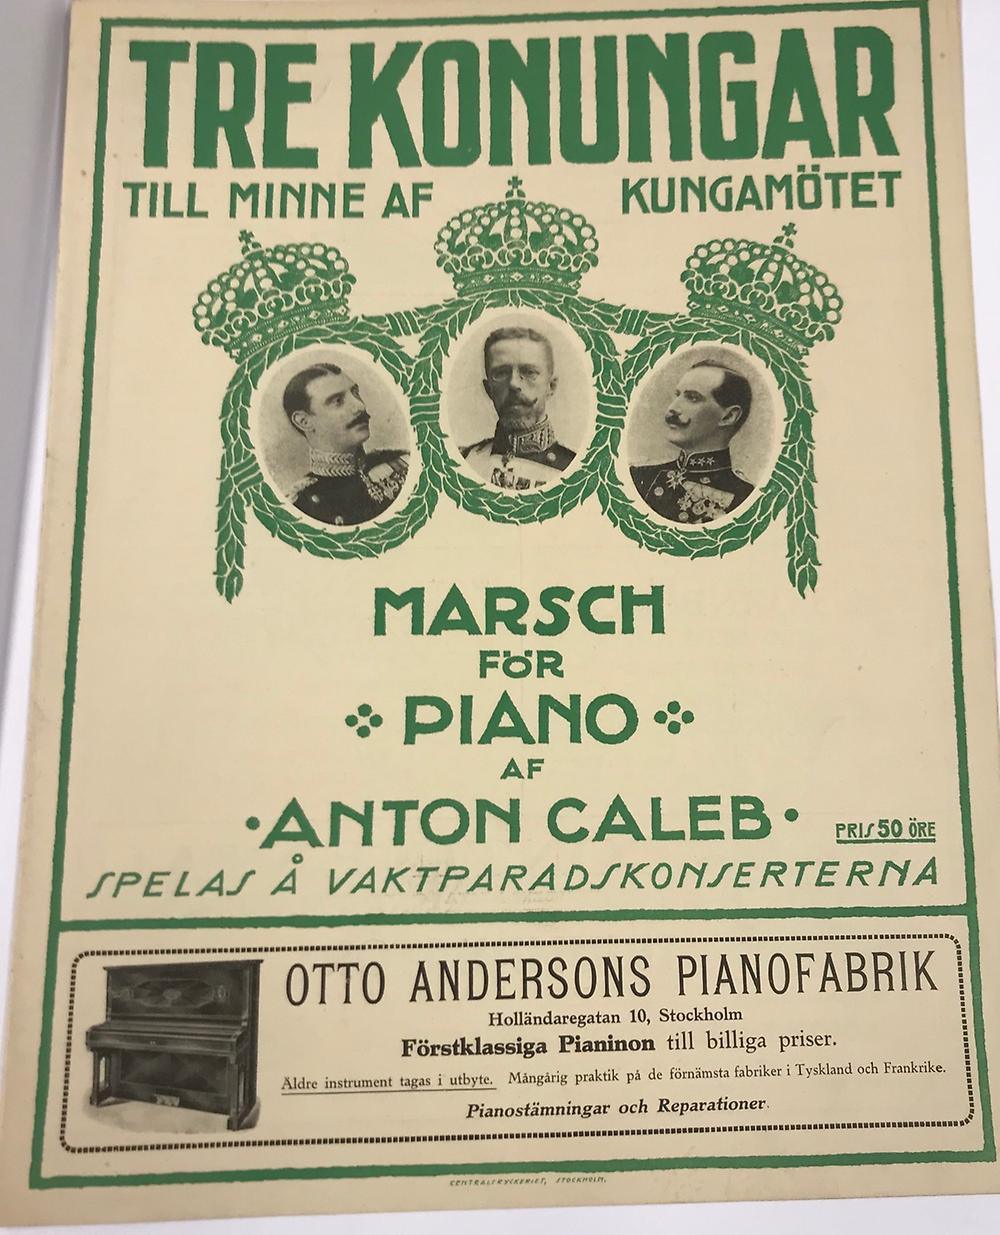 Musiktrycket "Tre konungar, marsch för piano av Anton Caleb" med tre kungaporträtt, varav ett av Gustav V